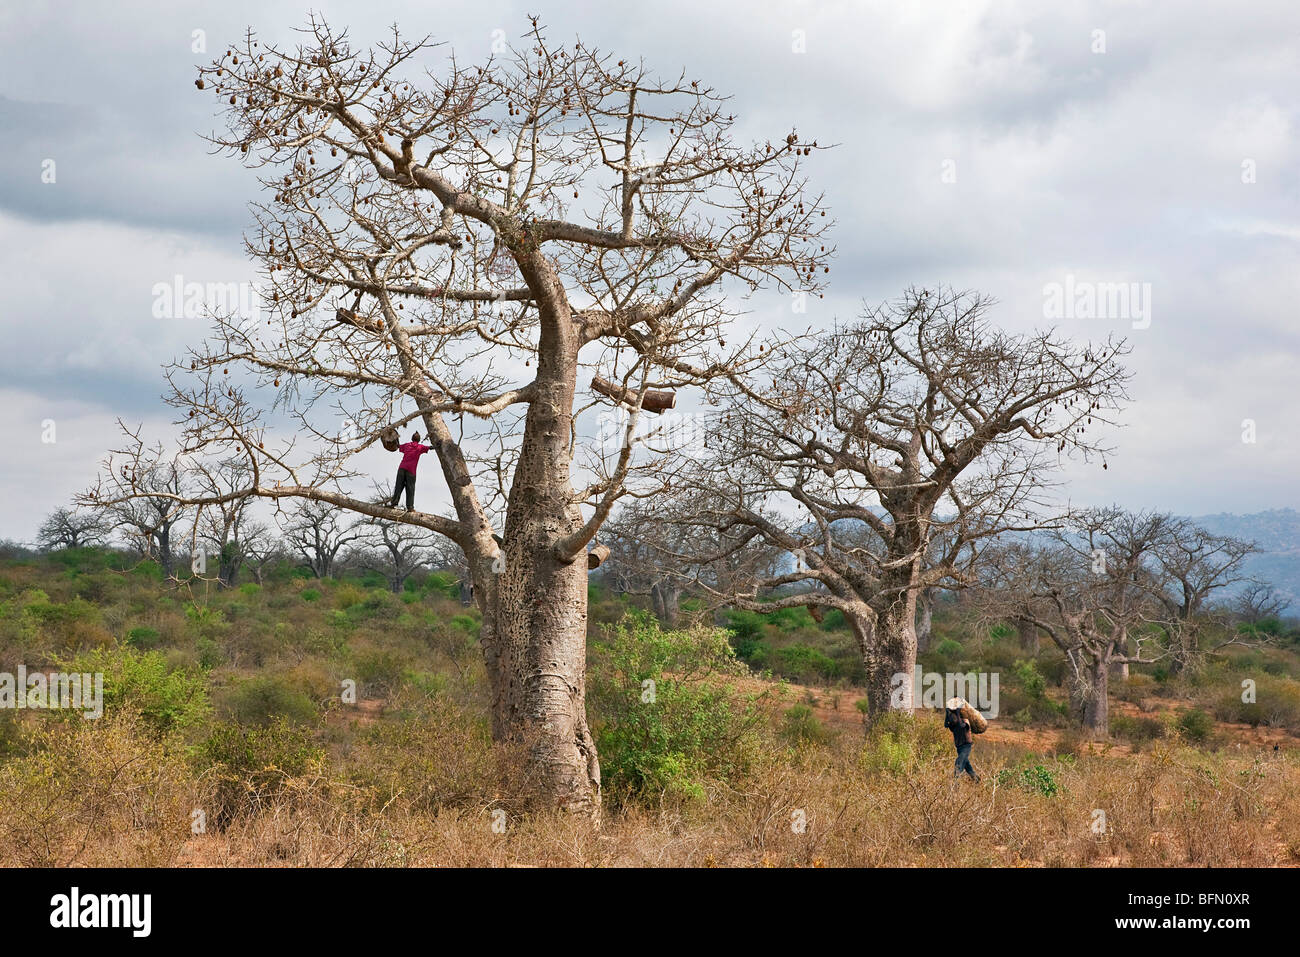 Kenya, Kibwezi. Un homme porte une ruche traditionnelle à son ami pour l'accrocher dans un grand baobab. Banque D'Images